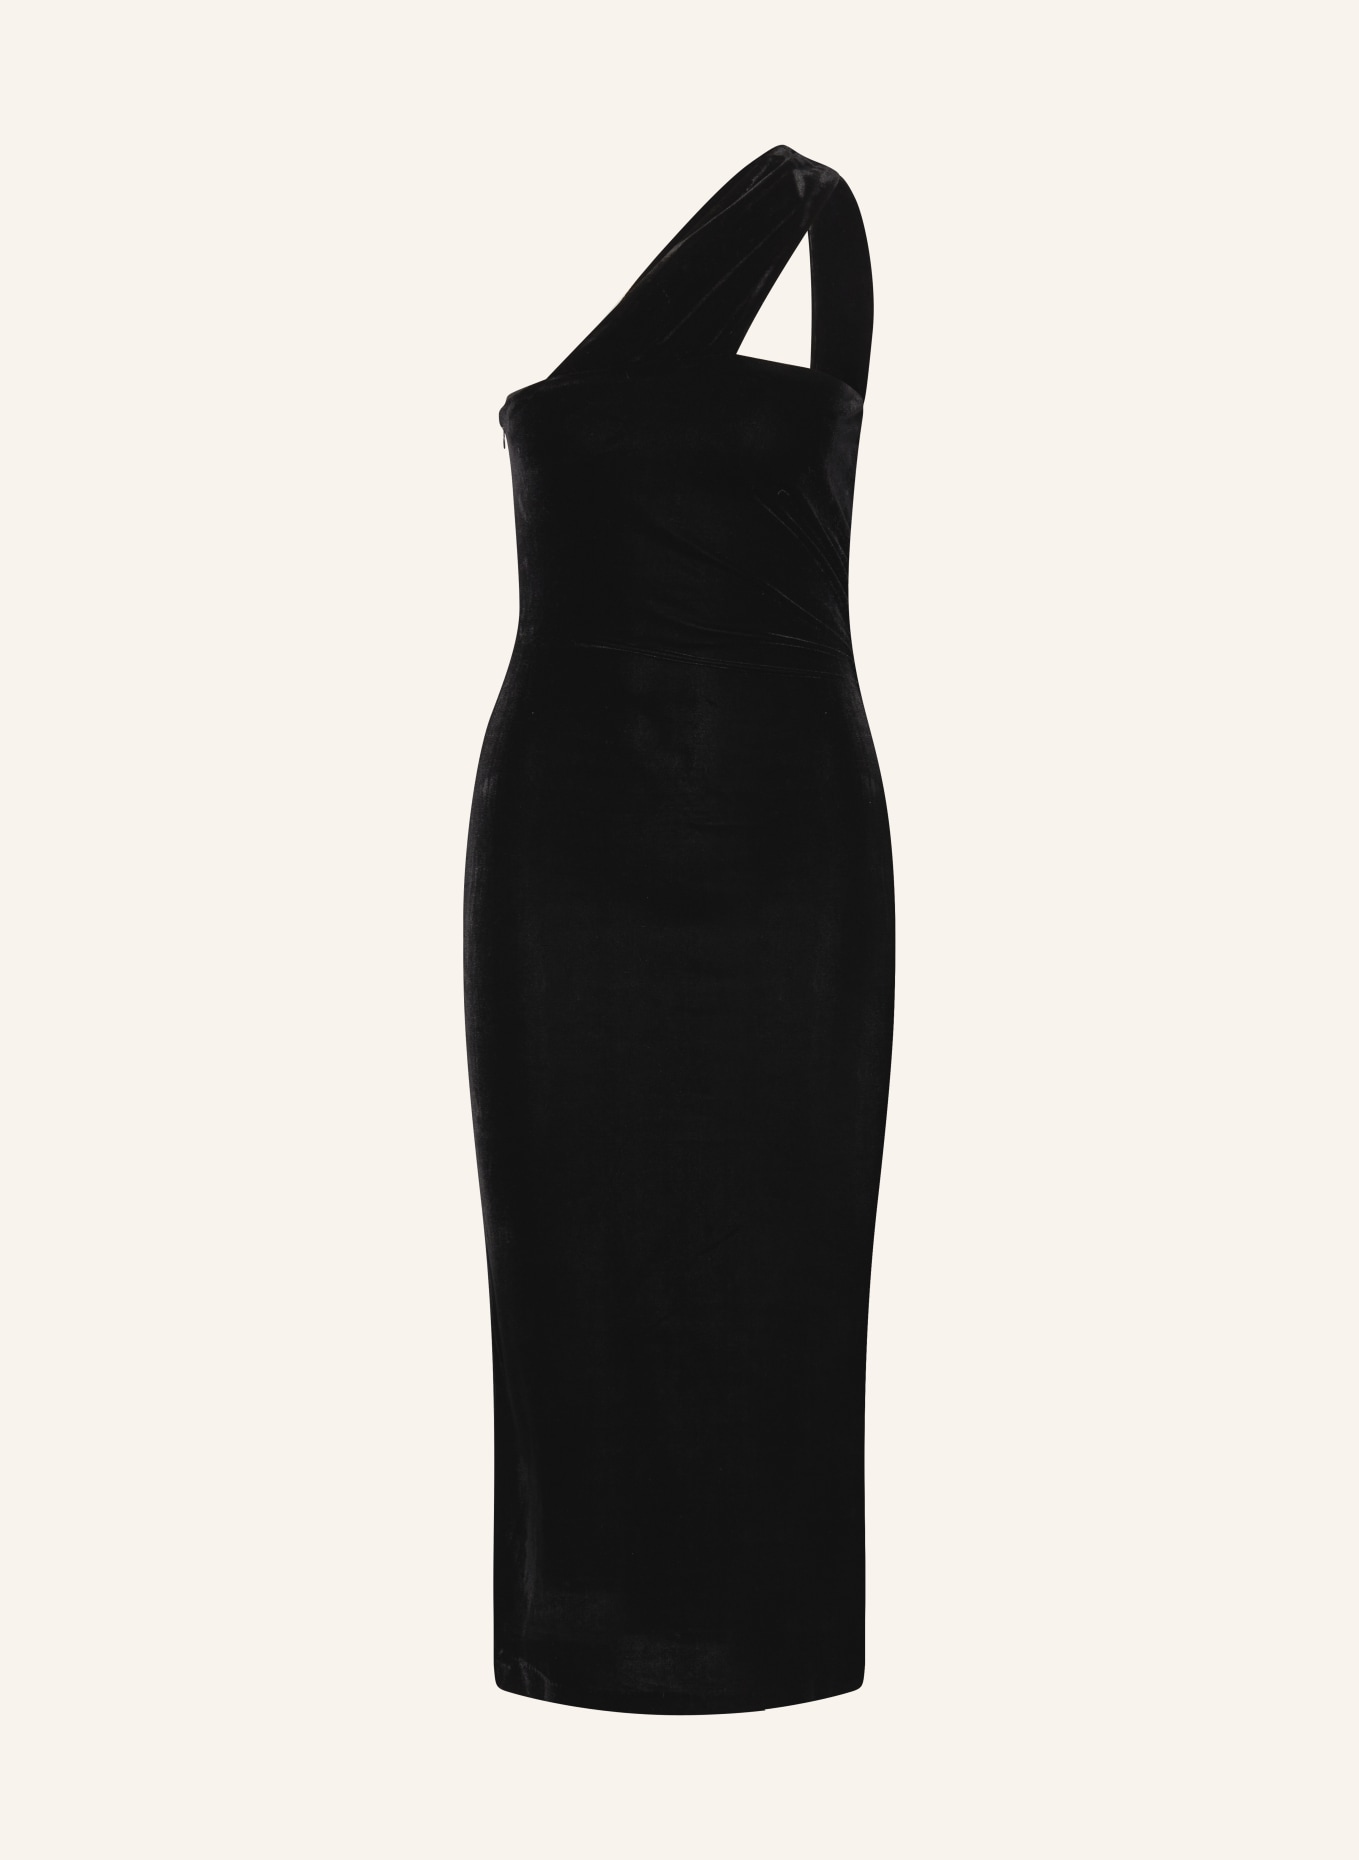 REISS One-Shoulder-Kleid ABBEY aus Samt, Farbe: SCHWARZ (Bild 1)